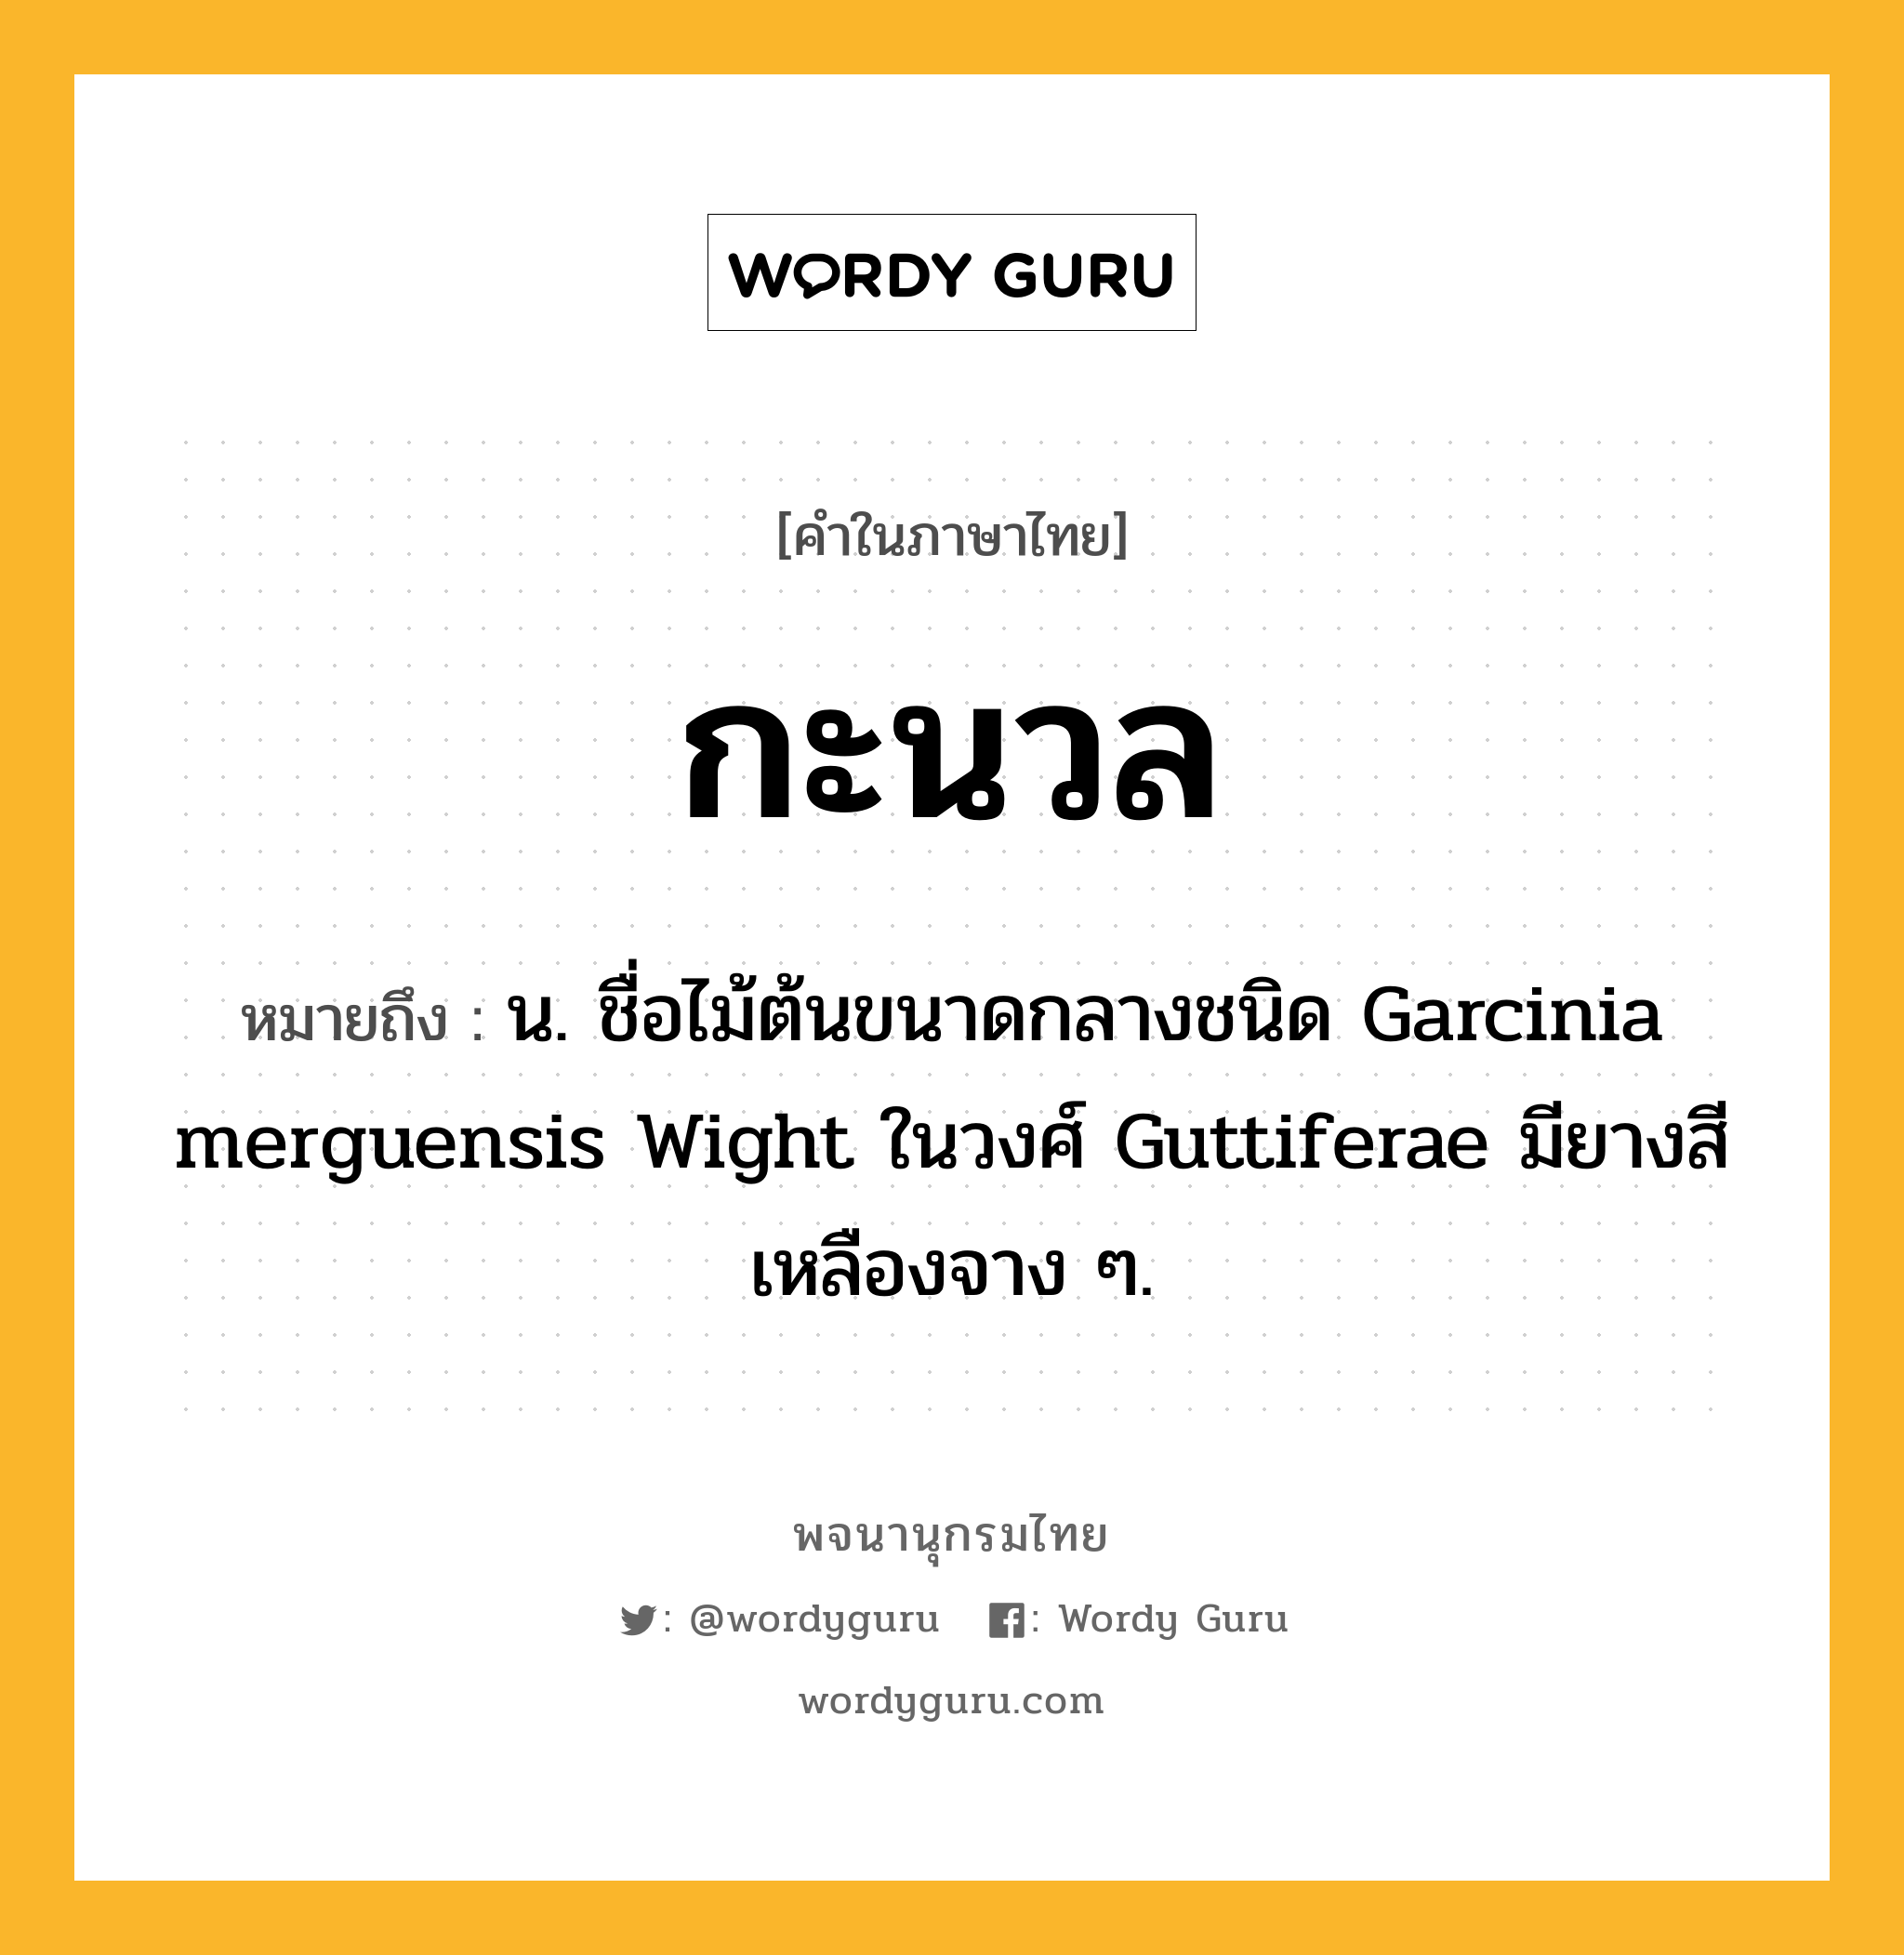 กะนวล ความหมาย หมายถึงอะไร?, คำในภาษาไทย กะนวล หมายถึง น. ชื่อไม้ต้นขนาดกลางชนิด Garcinia merguensis Wight ในวงศ์ Guttiferae มียางสีเหลืองจาง ๆ.